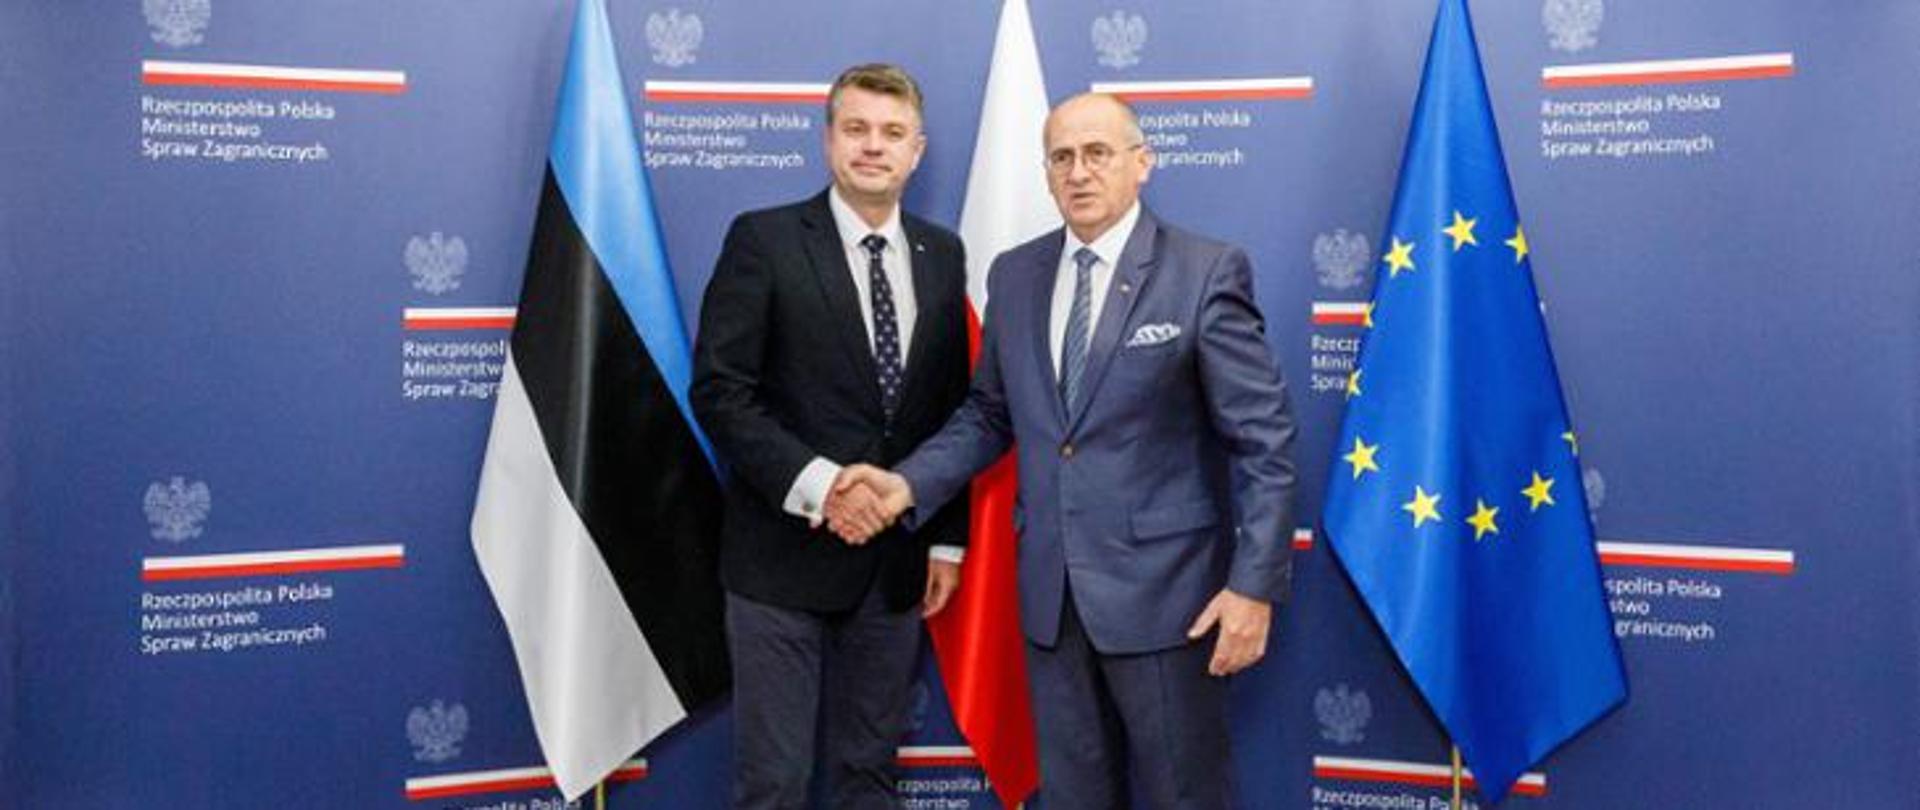 https://www.gov.pl/web/dyplomacja/wizyta-ministra-spraw-zagranicznych-estonii-urmasa-reinsalu-w-warszawie